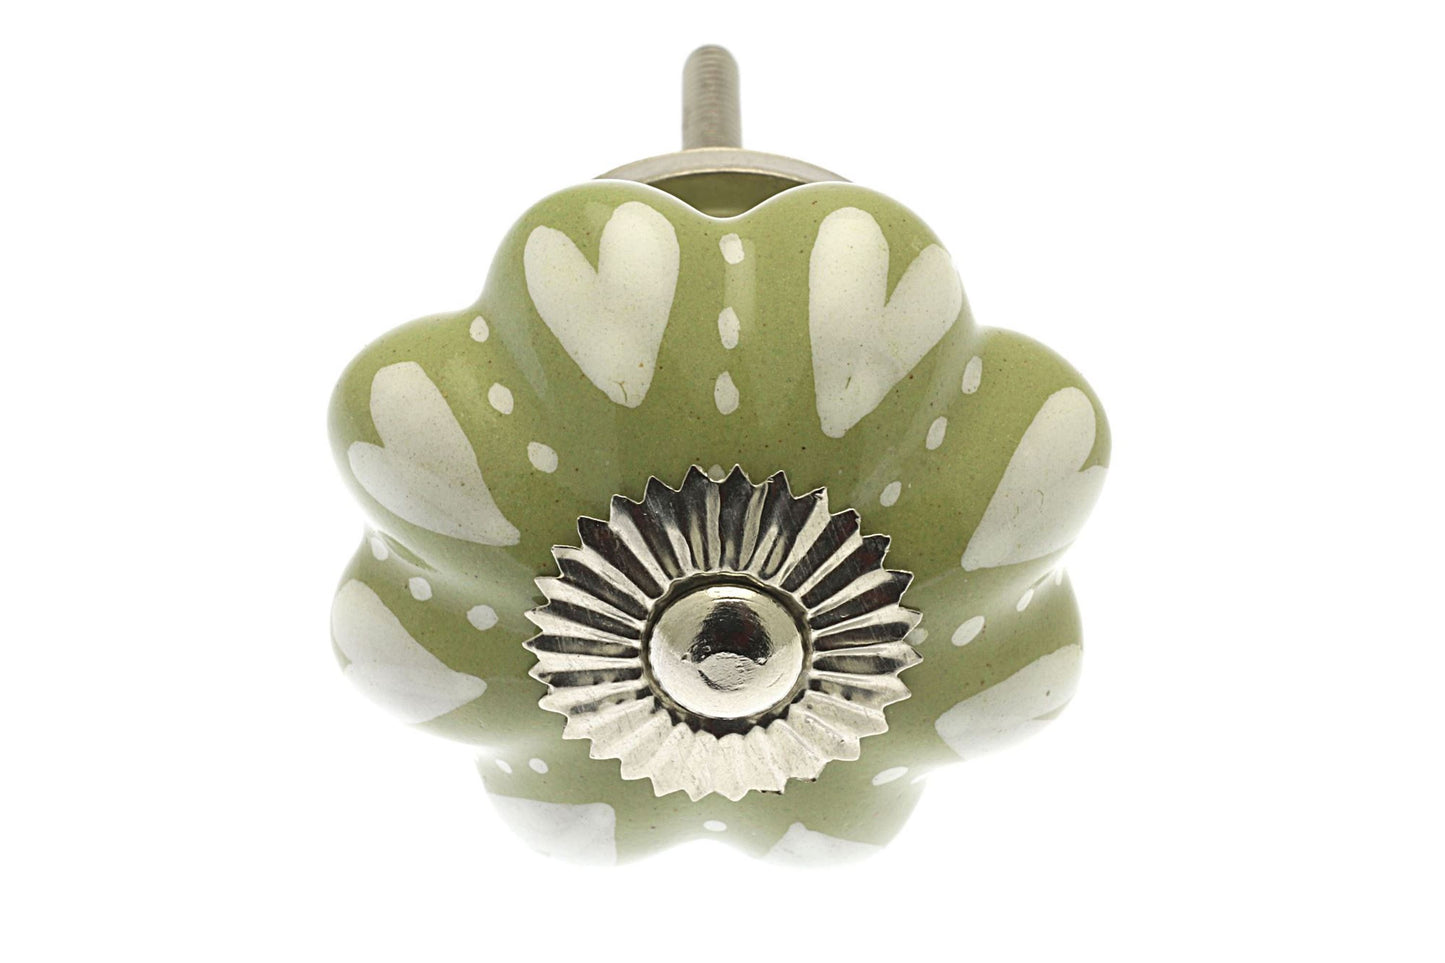 Bouton de placard en céramique, cœurs et points ivoire sur vert olive